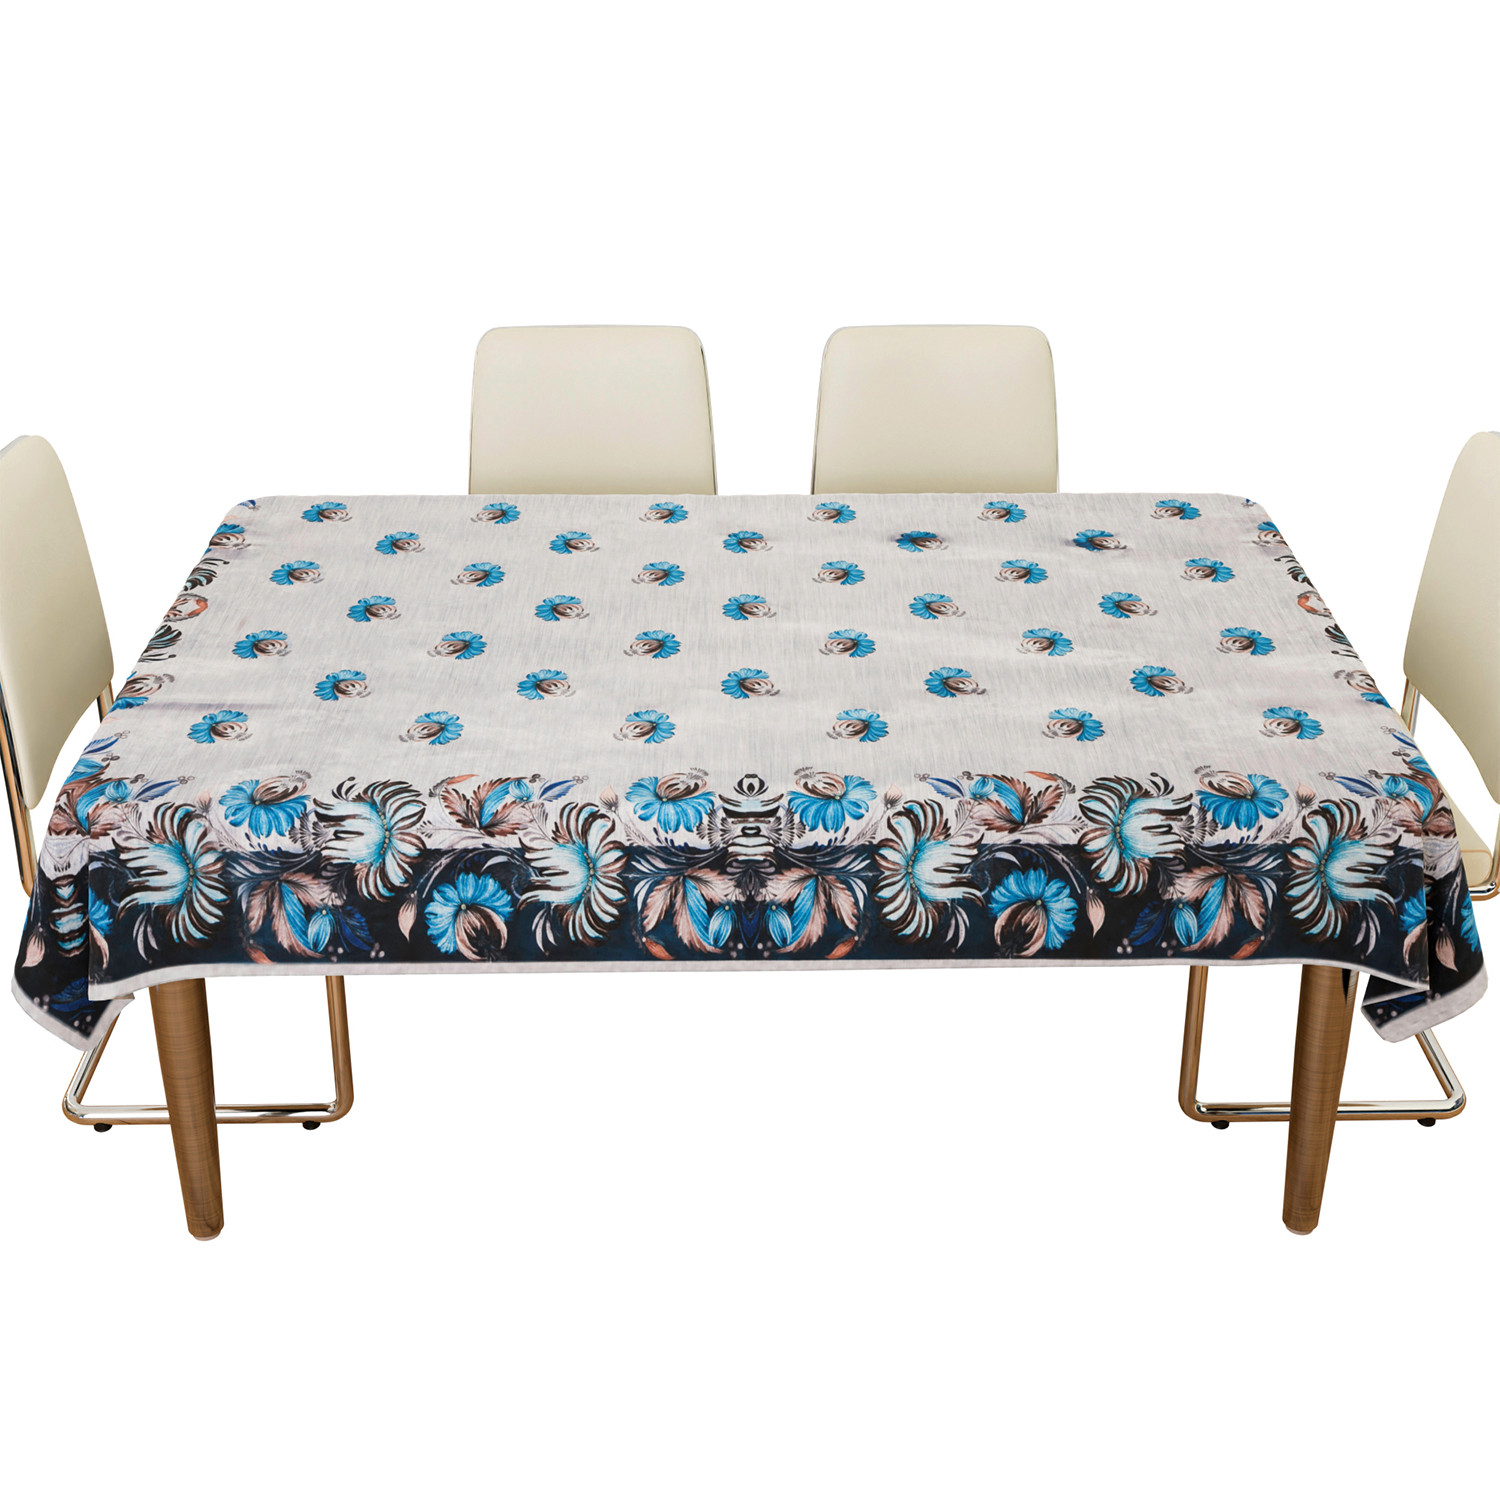 Kuber Industries Dining Table Cover | Velvet Sparkle Table Cover | Blue Digital Flower Table Cover | Table Protector | Table Cover for Dining Table | 60X90 Inch | DTC | Gray